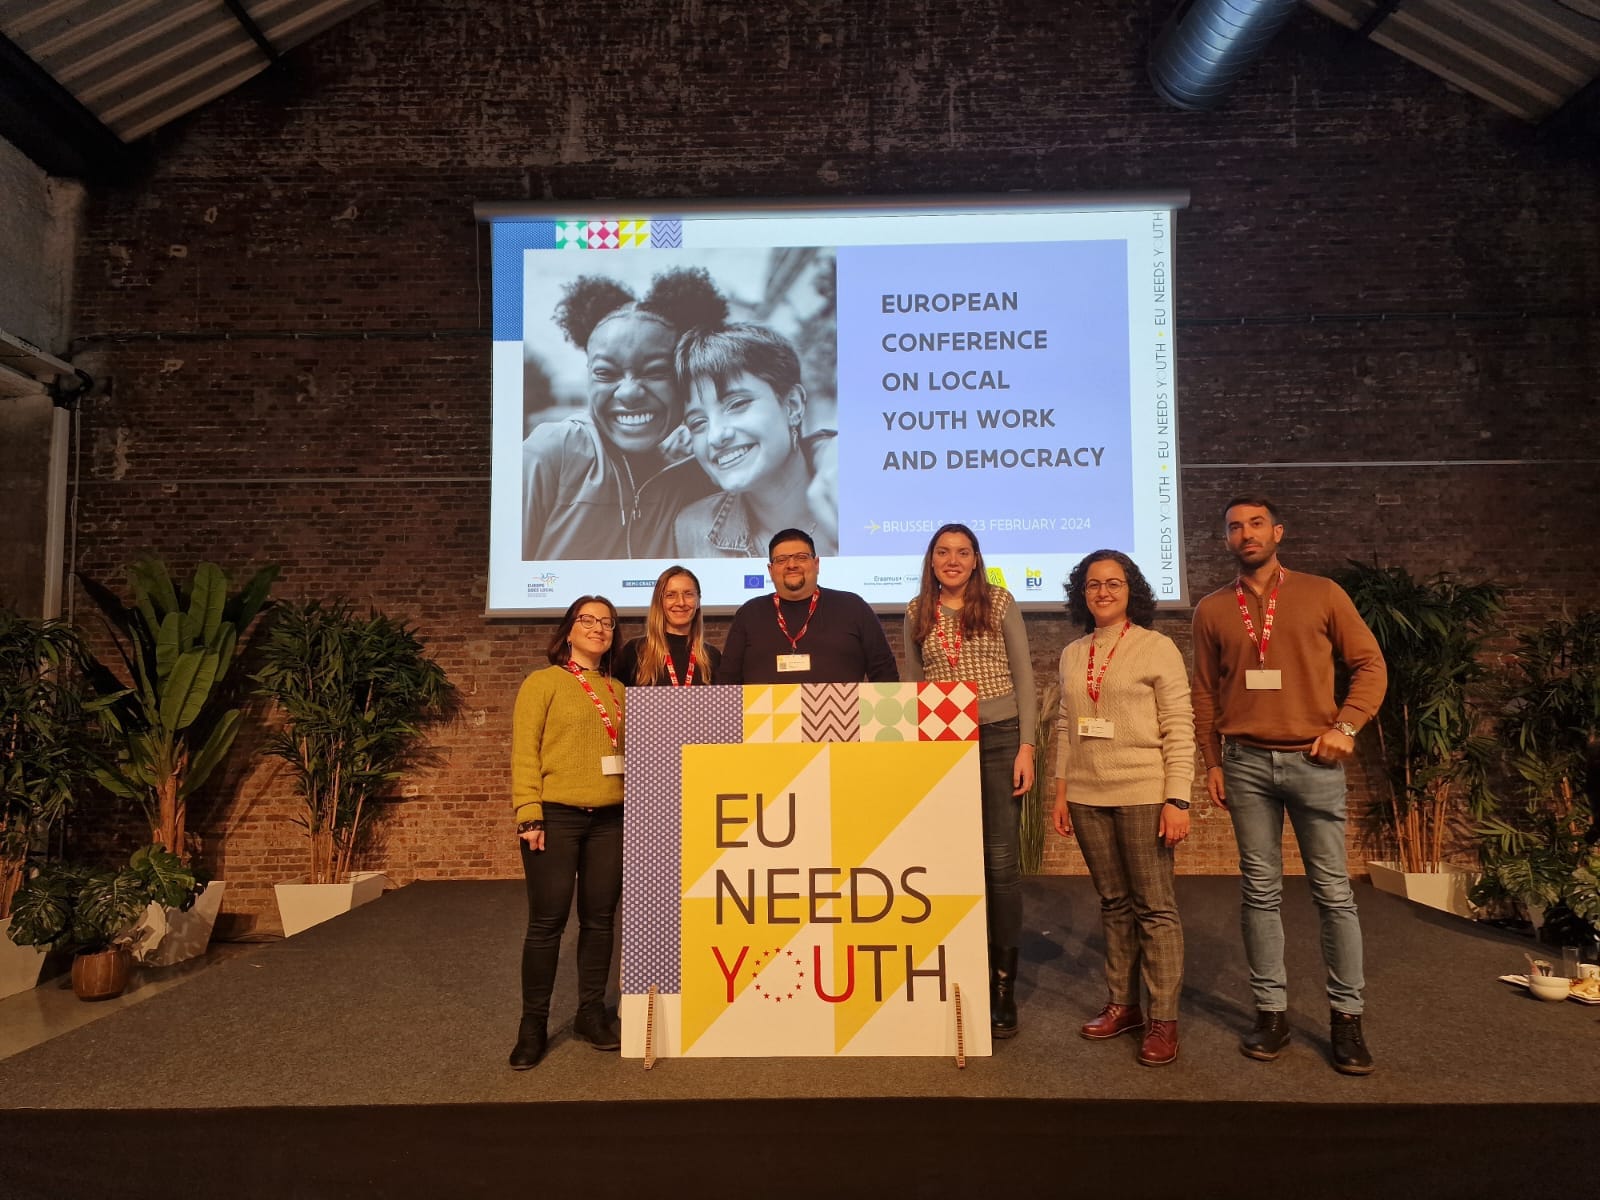 Ο Πρόεδρος του Δημοτικού Συμβουλίου Νεολαίας Αραδίππου με 6μελη αποστολή στο συνέδριο “European Conference on local youth work and democracy” στις Βρυξέλλες